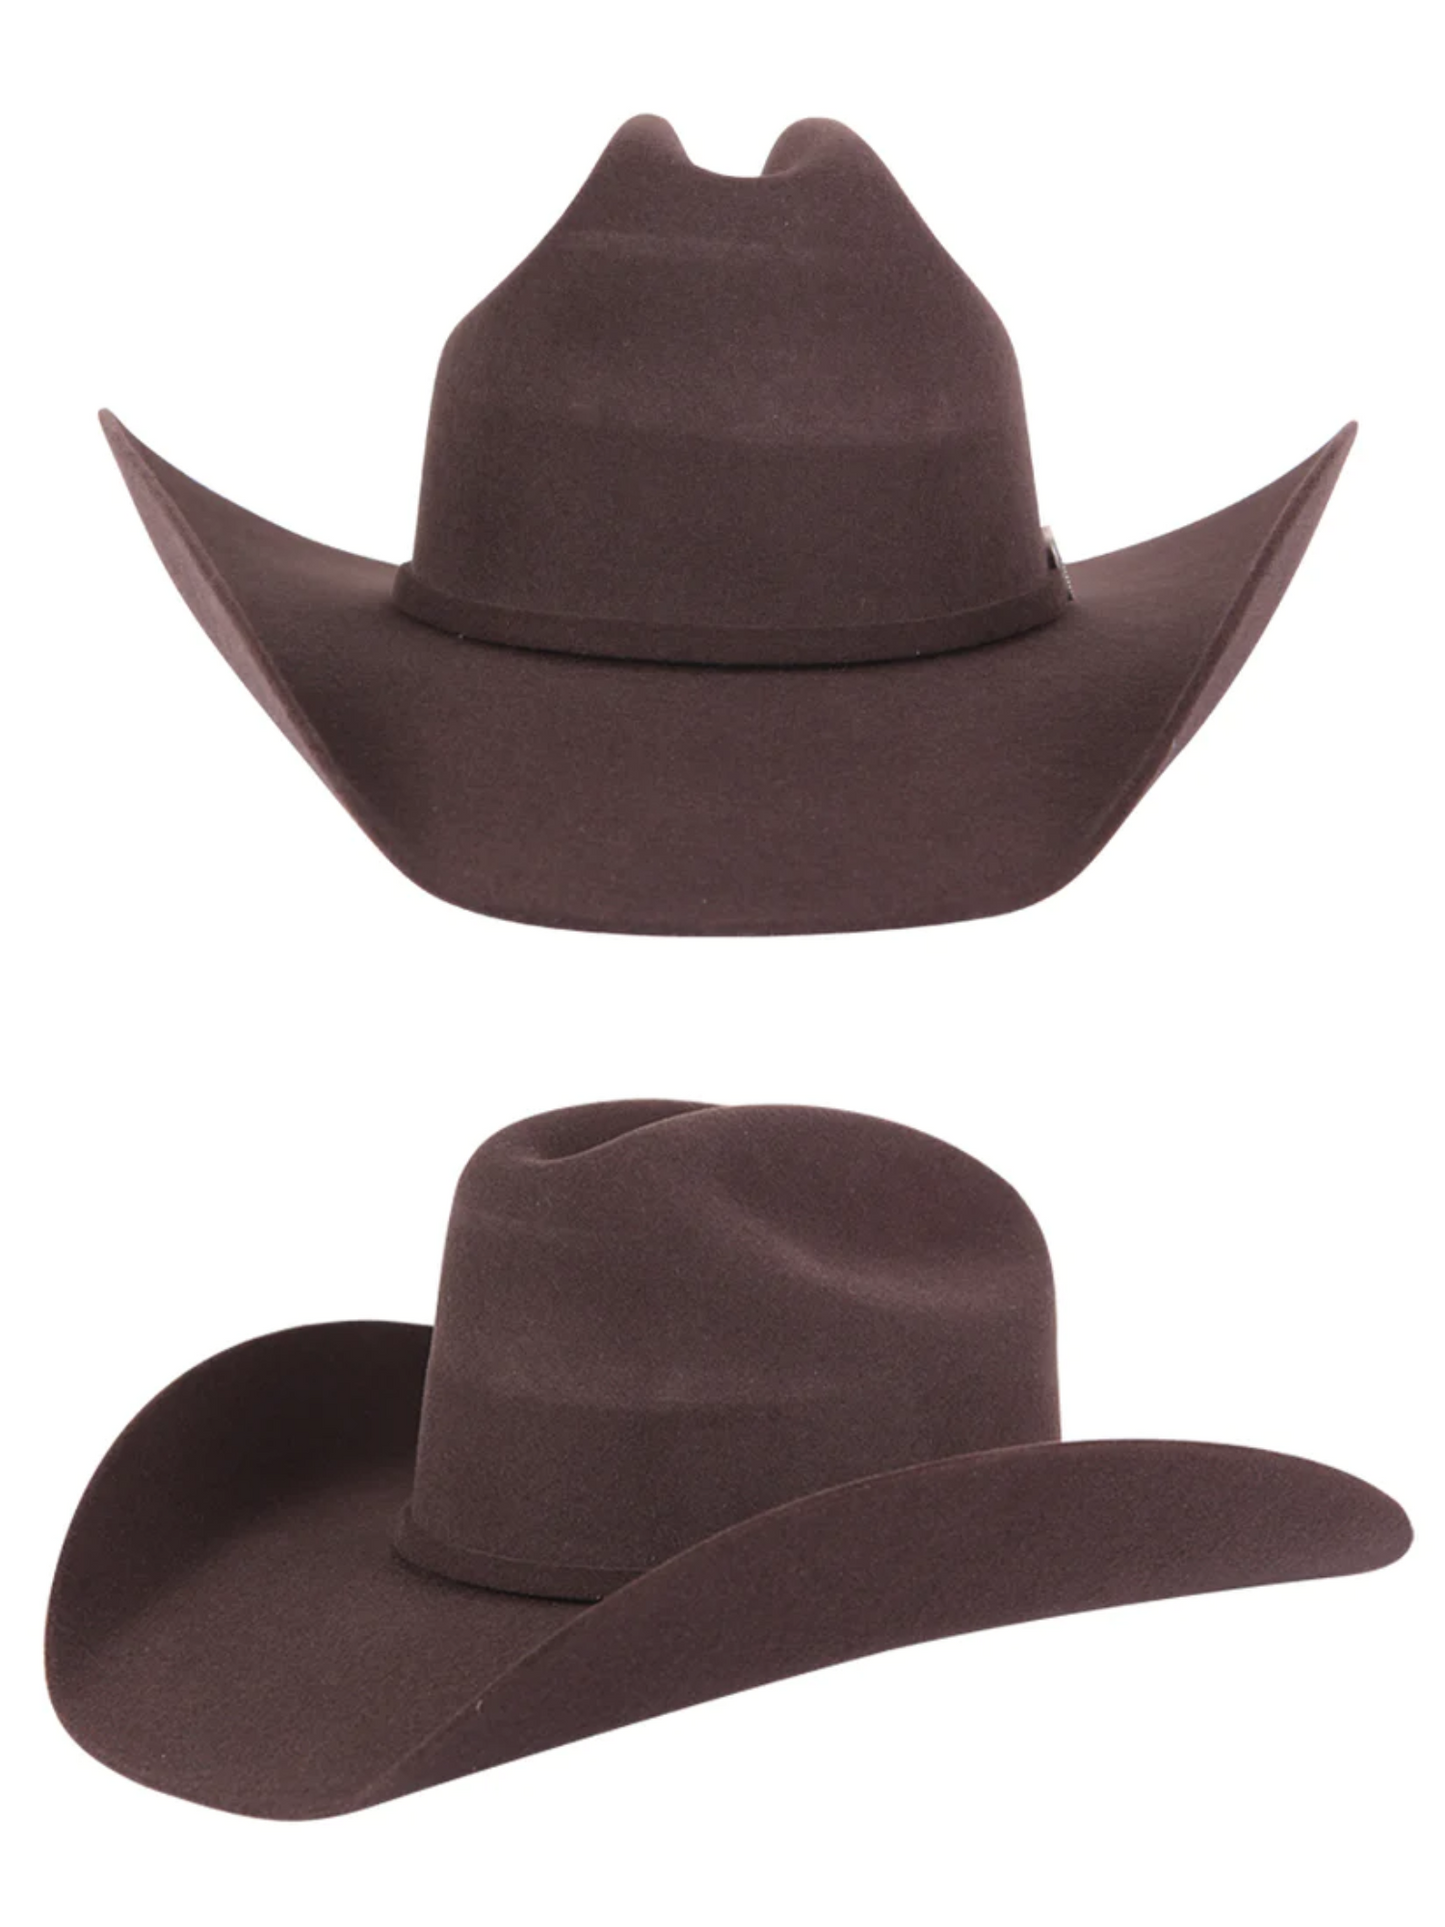 Texana Last Marlboro 50X Wool for Men 'El Señor de los Cielos' - ID: 41668 Cowboy Hat El Señor de los Cielos